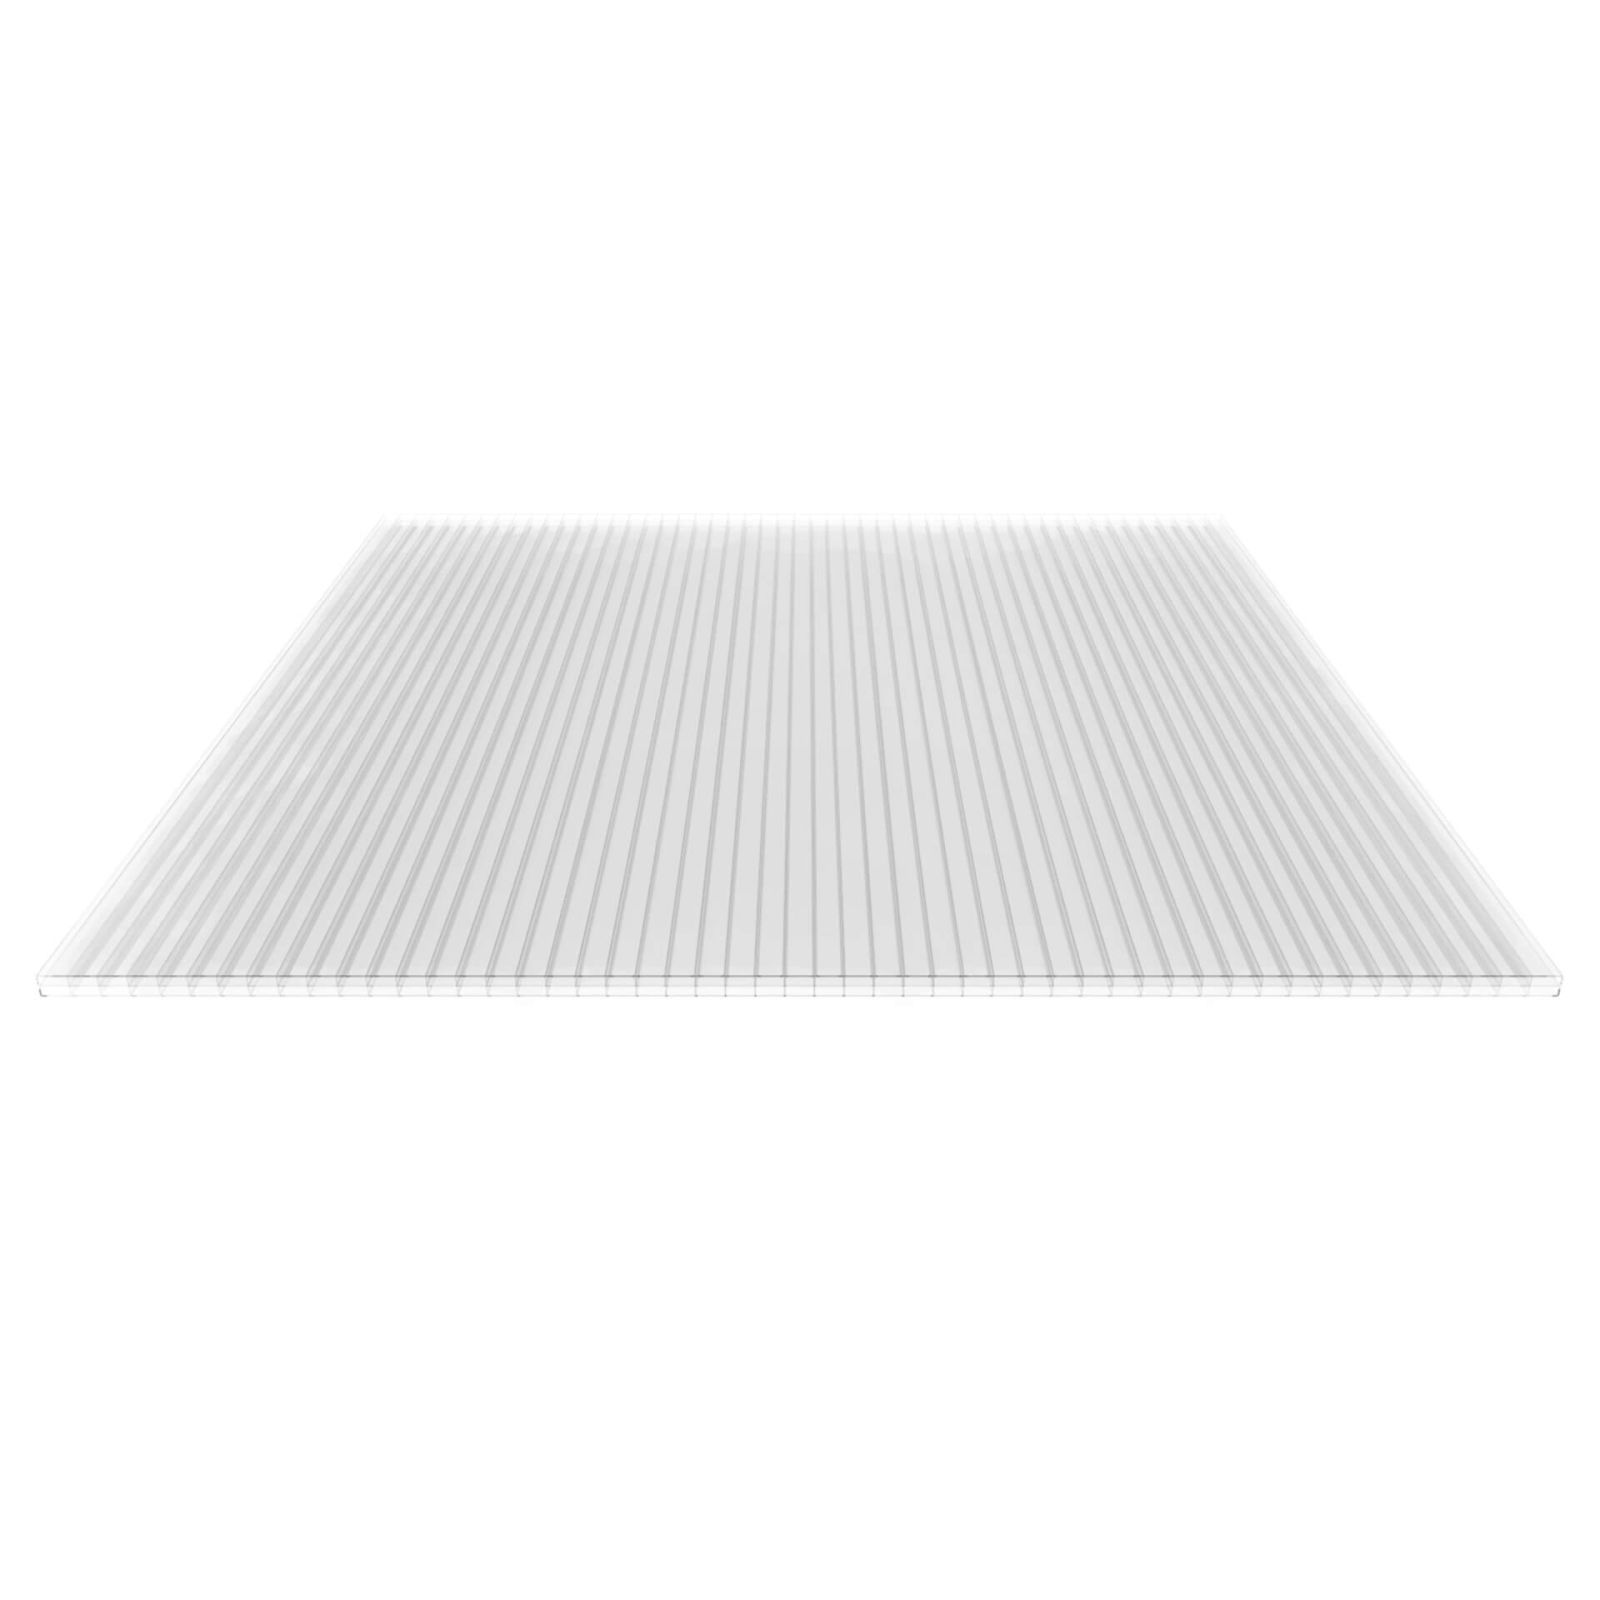 Polycarbonat Stegplatte | 16 mm | Profil ECO | Sparpaket | Plattenbreite 980 mm | Klar | Breite 3,05 m | Länge 2,00 m #5